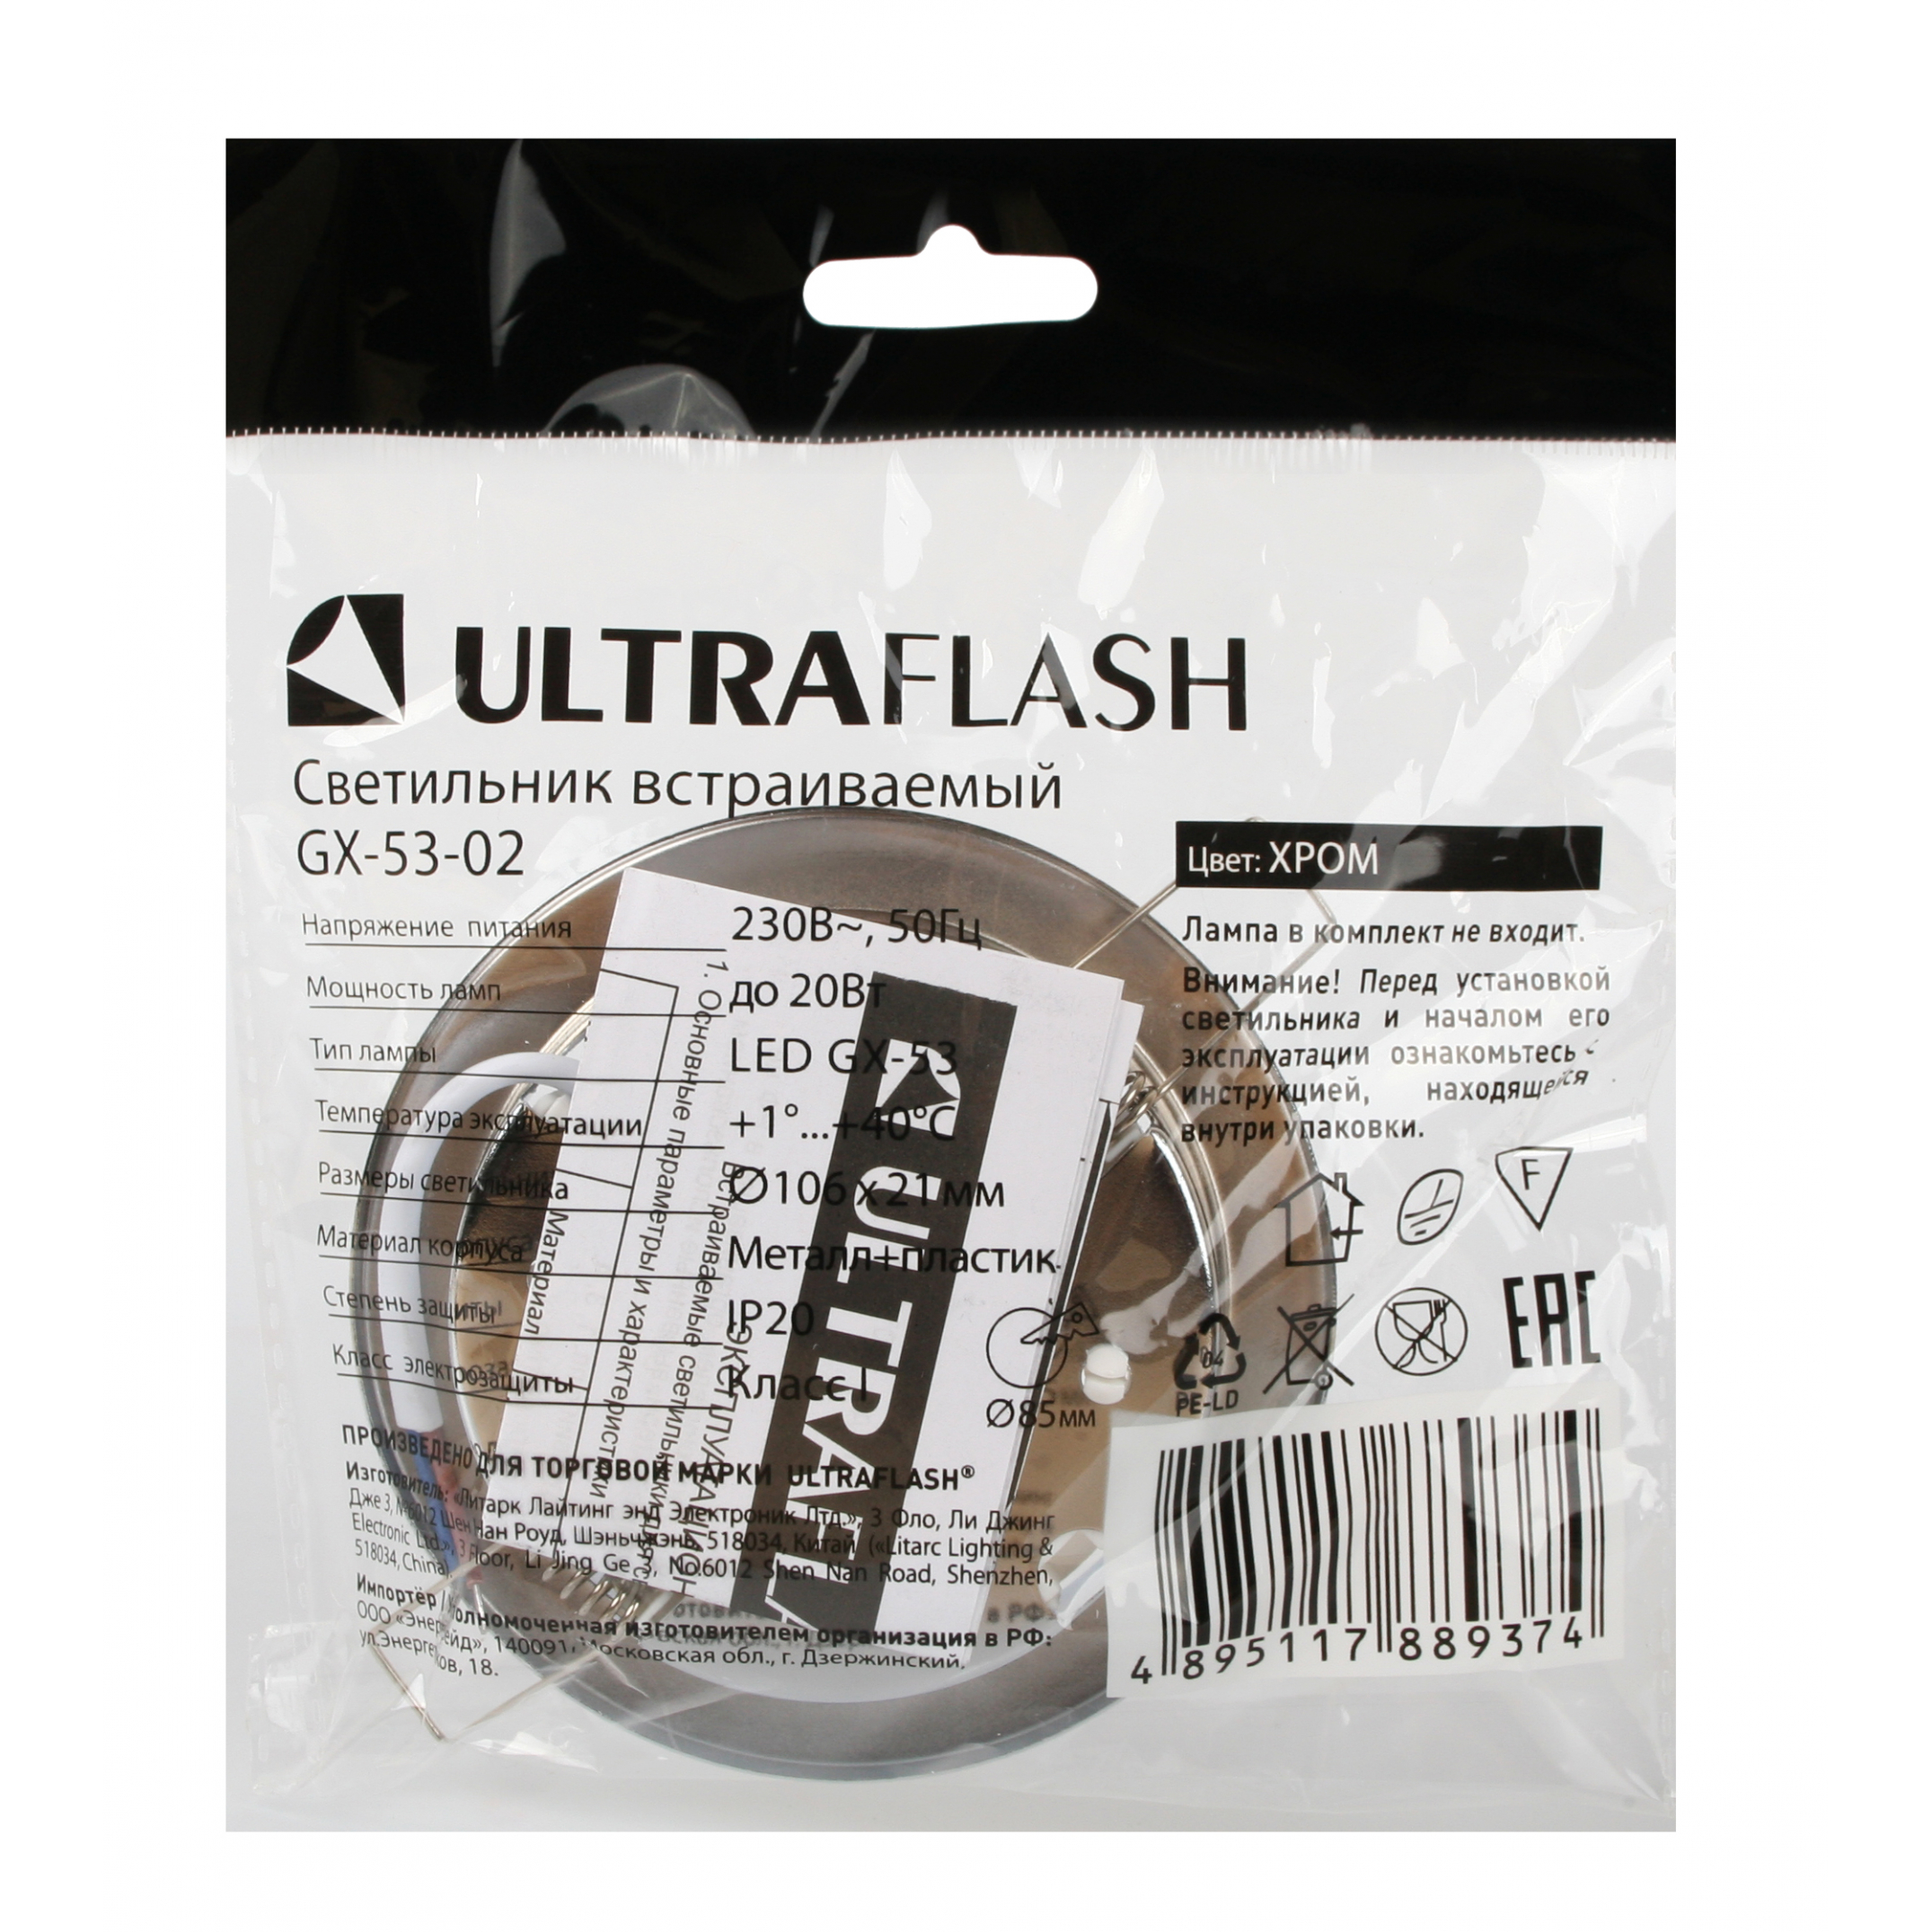 Ultraflash GX-53-02 (Металл. встраиваемый св-к, хром, 220В)